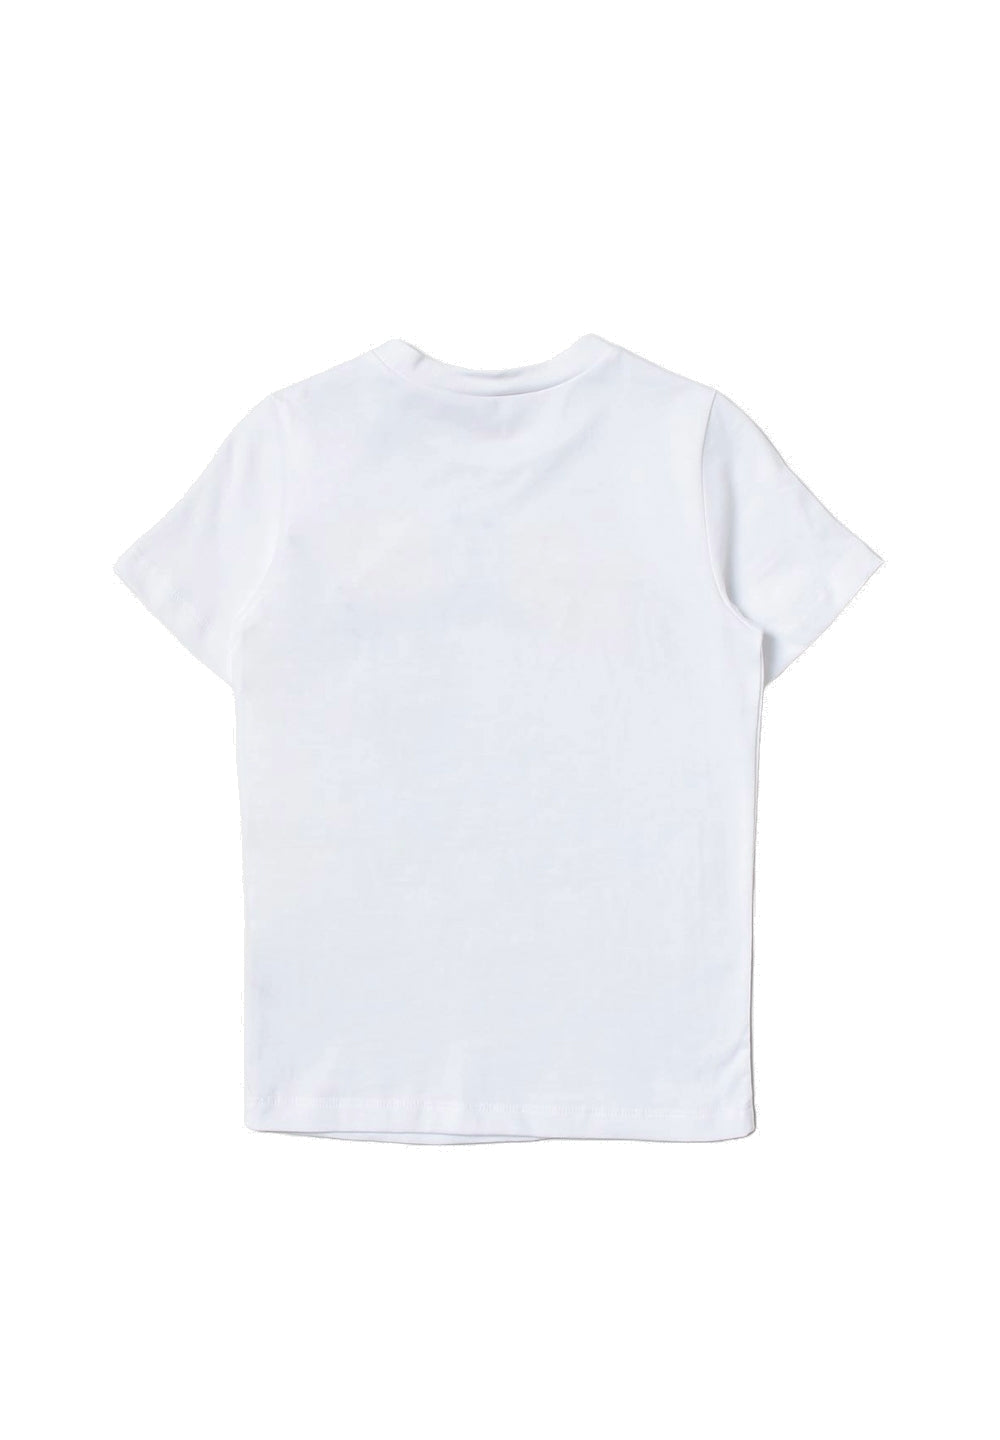 T-shirt bianca per bambina